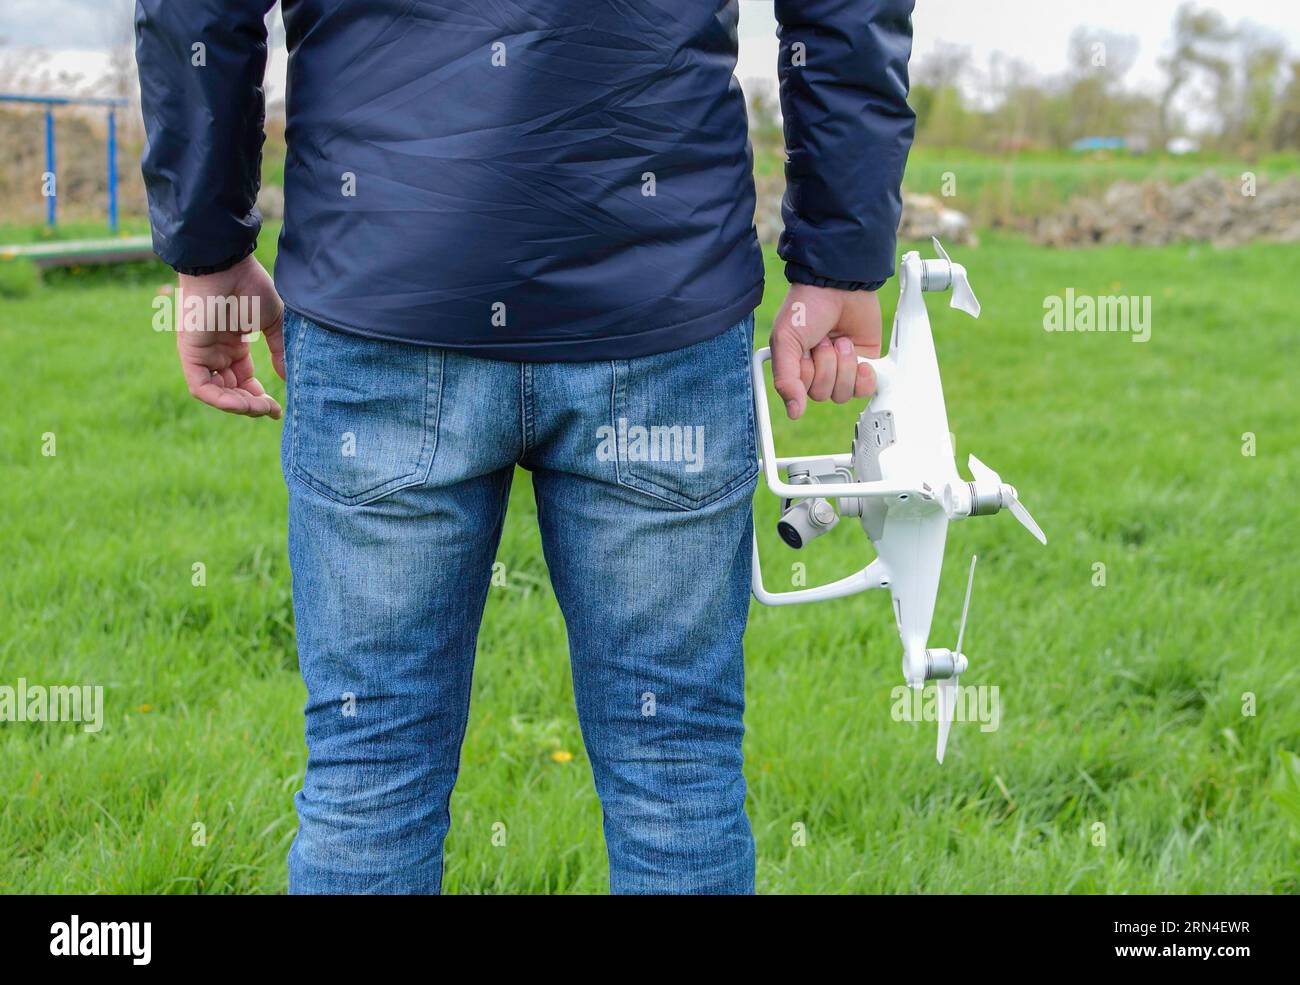 Un homme avec un quadrocopter dans ses mains. Kvadrokopter blanc préparer pour le vol Banque D'Images